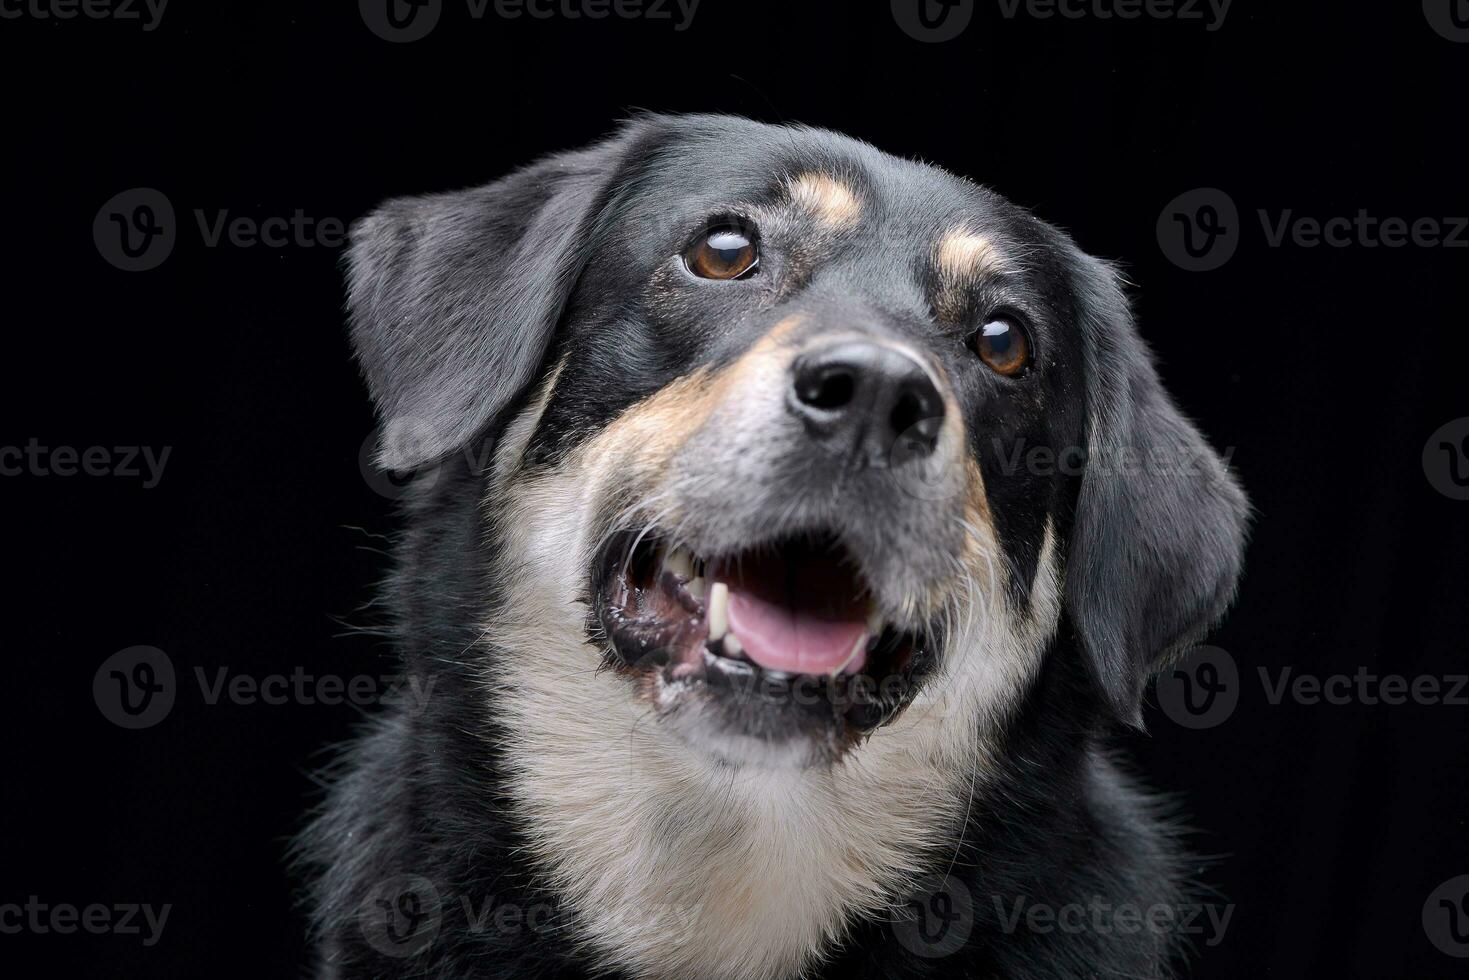 ritratto di un adorabile misto razza cane foto